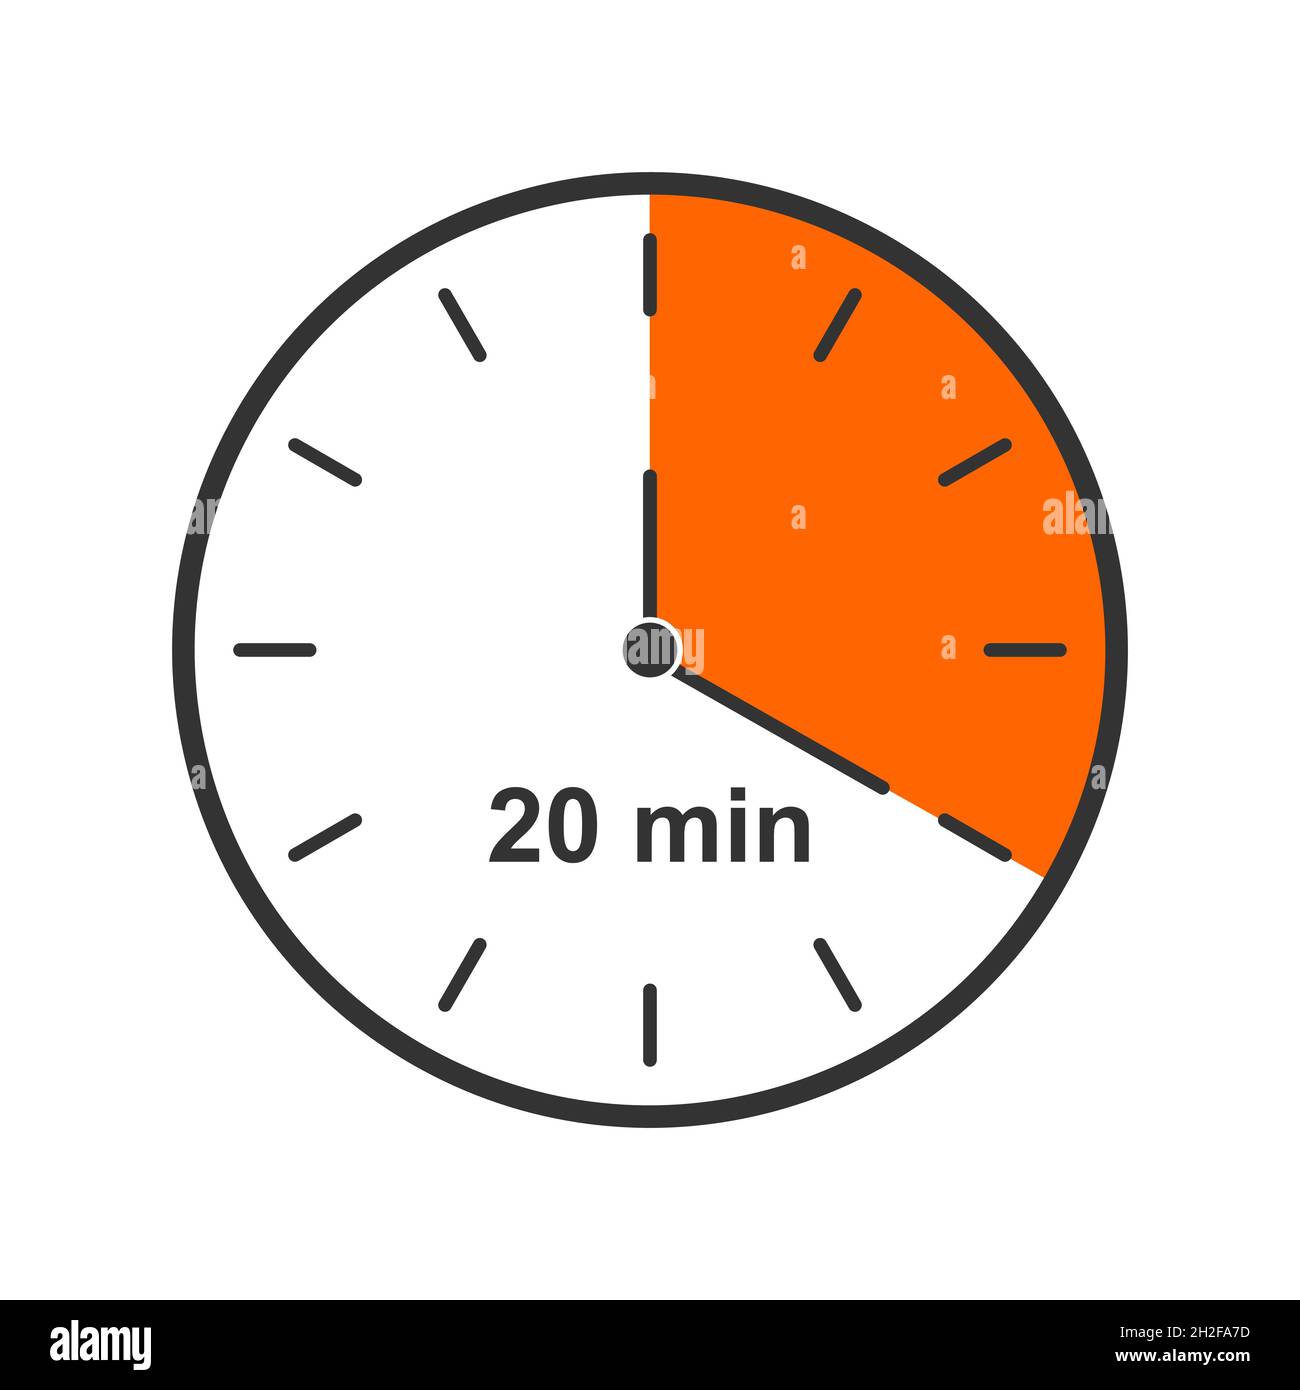 Uhrsymbol mit einem Zeitintervall von 20 Minuten. Countdown-Timer oder  Stoppuhrsymbol. Infografik-Element für Kochen oder Sportspiele isoliert auf  weißem Hintergrund. Vektorgrafik flach Stock-Vektorgrafik - Alamy